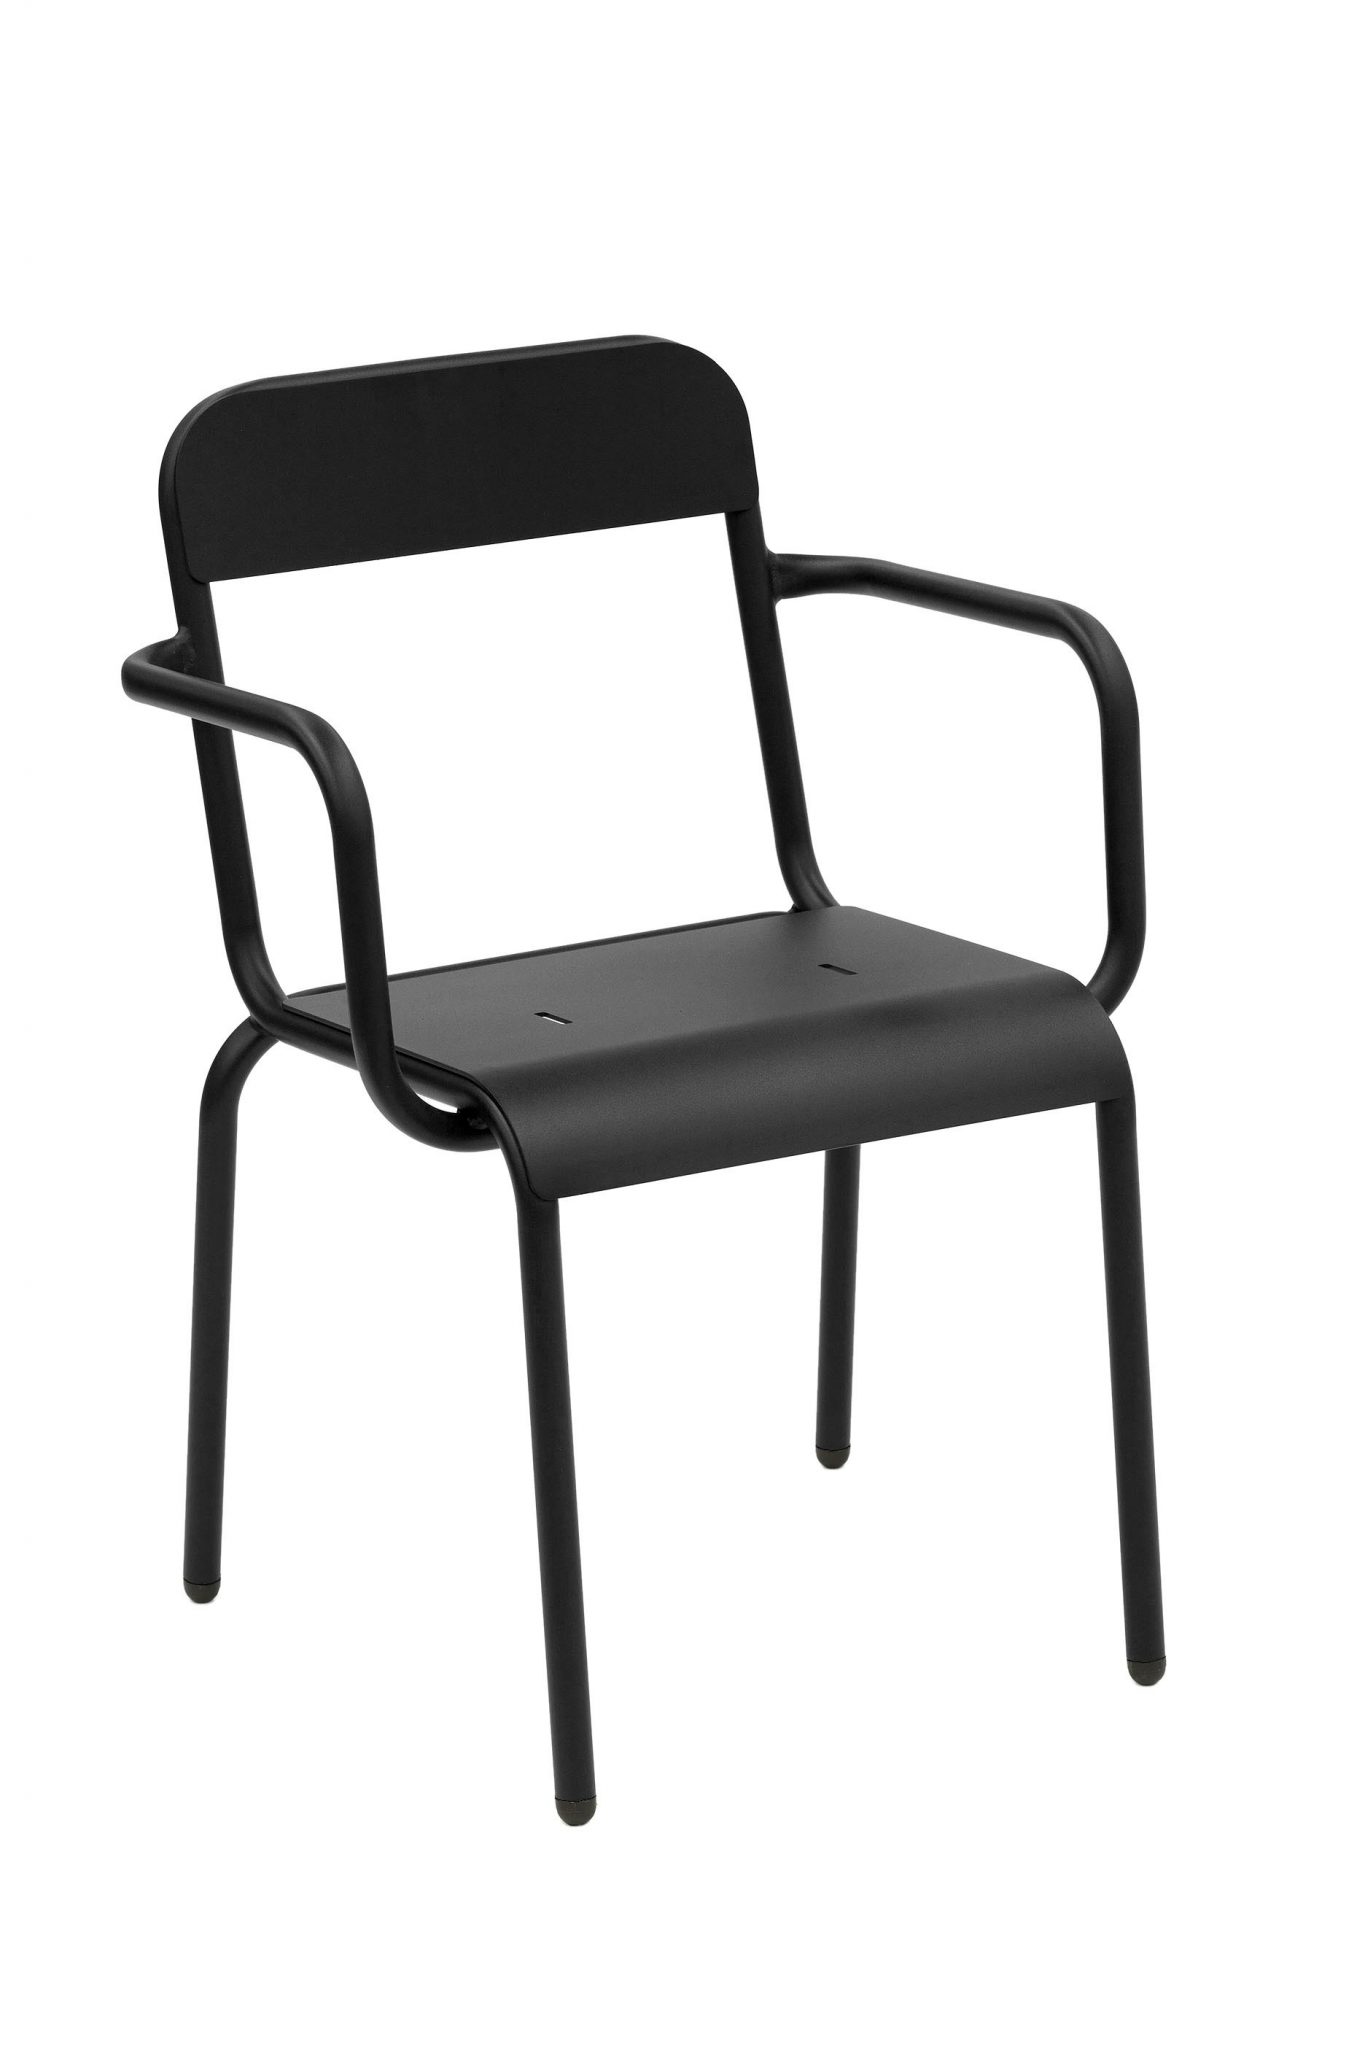 Rimini Arm Chair